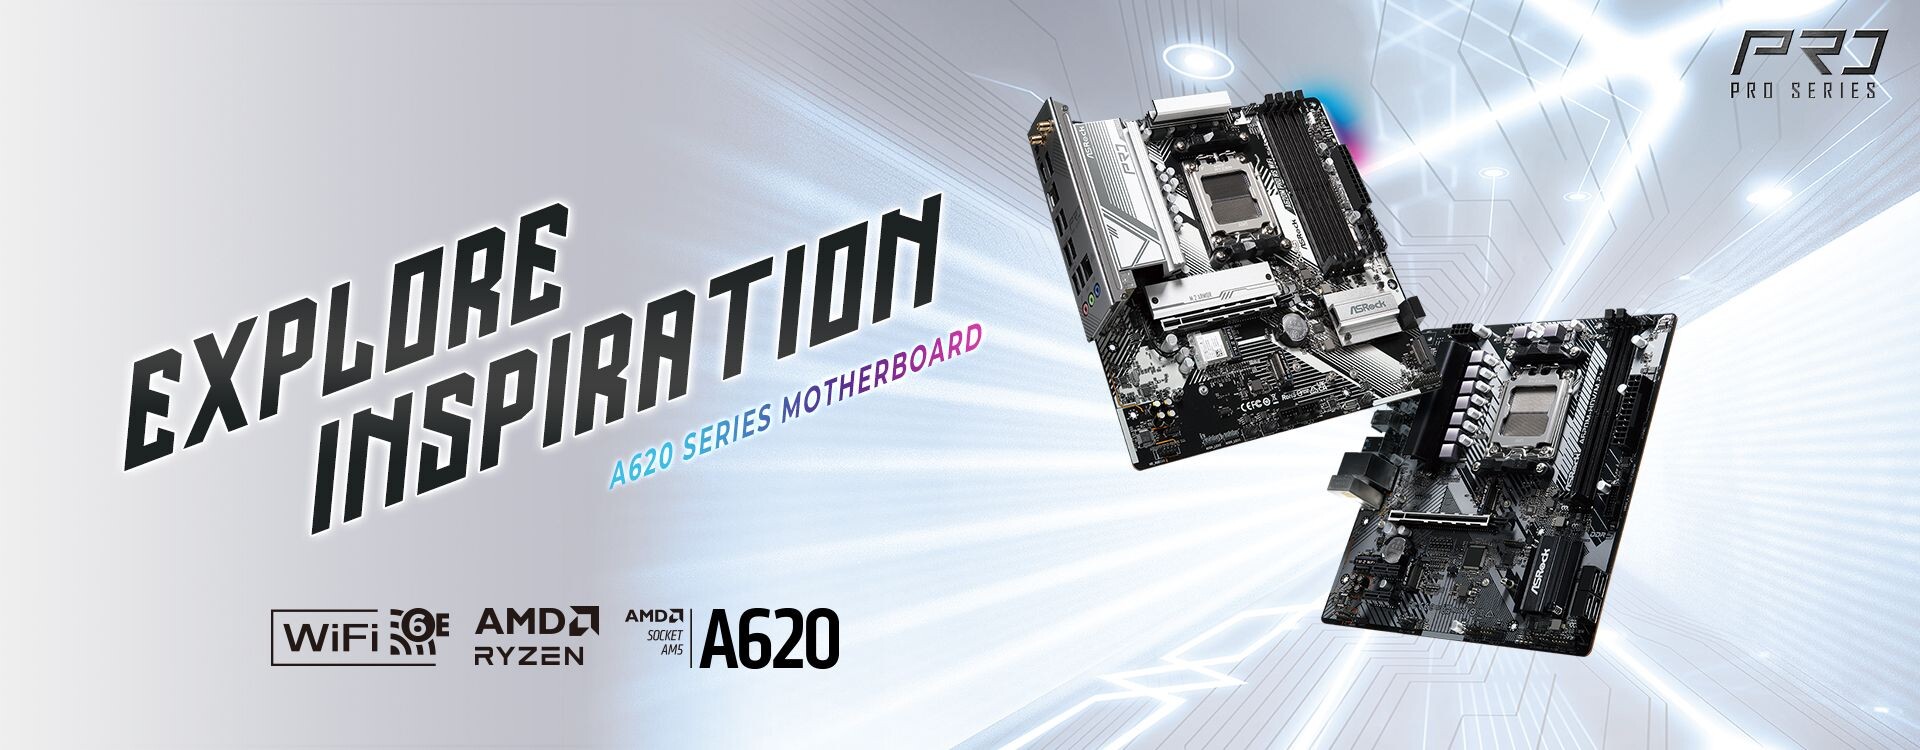 ASRock anunció sus motherboards A620